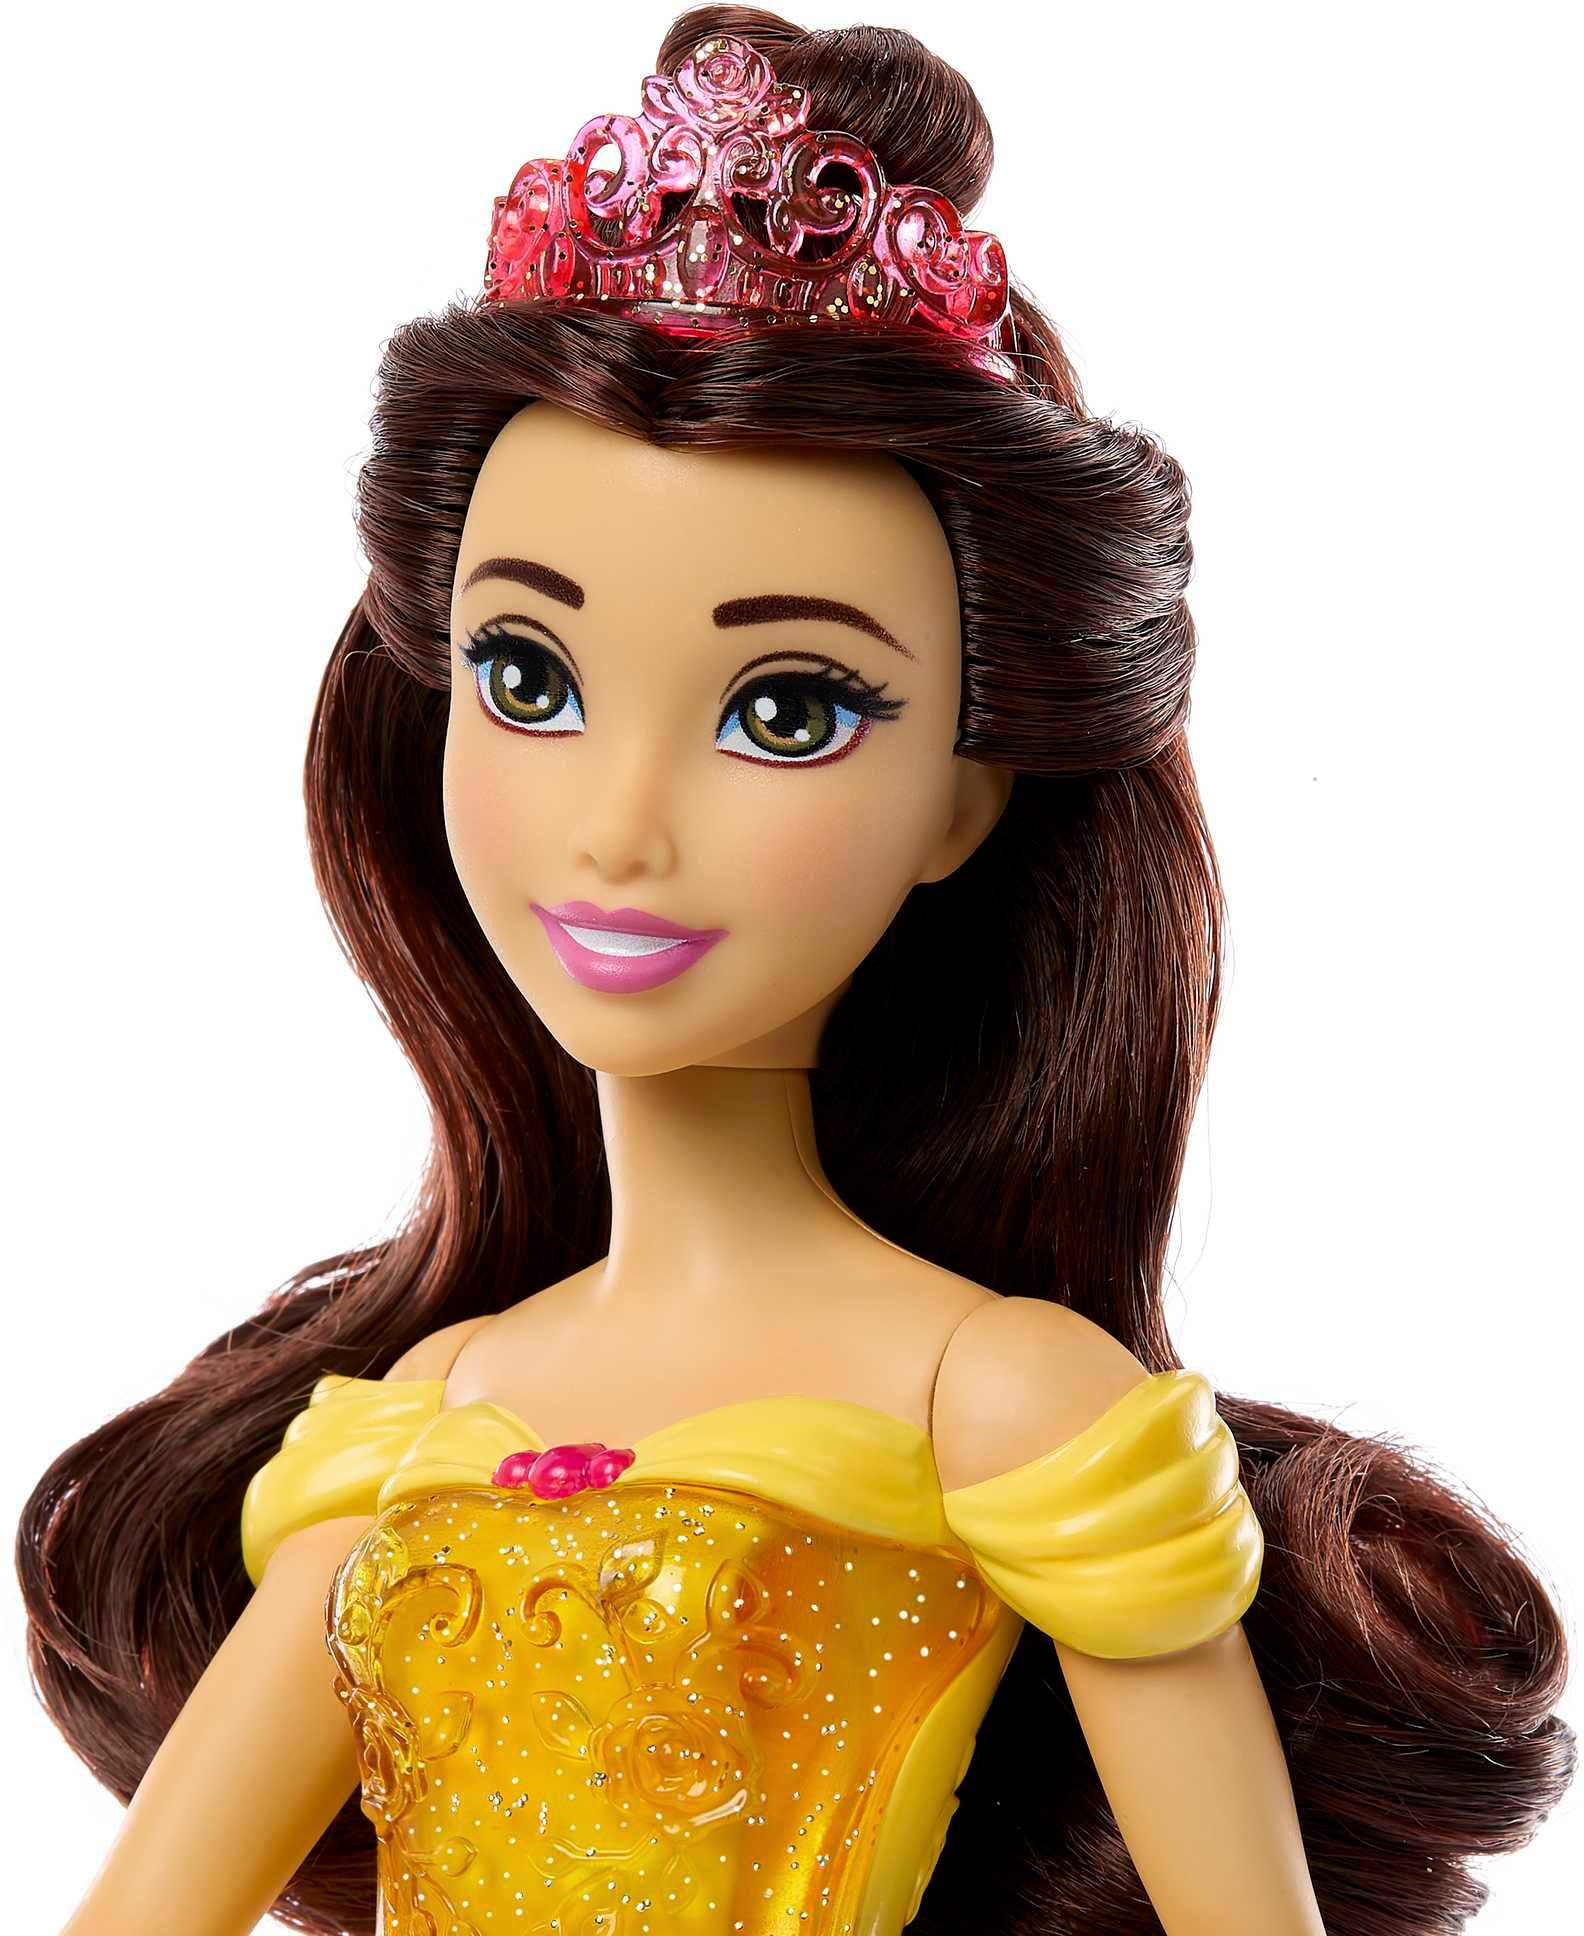 Anziehpuppe Belle Mattel® Princess Disney Modepuppe